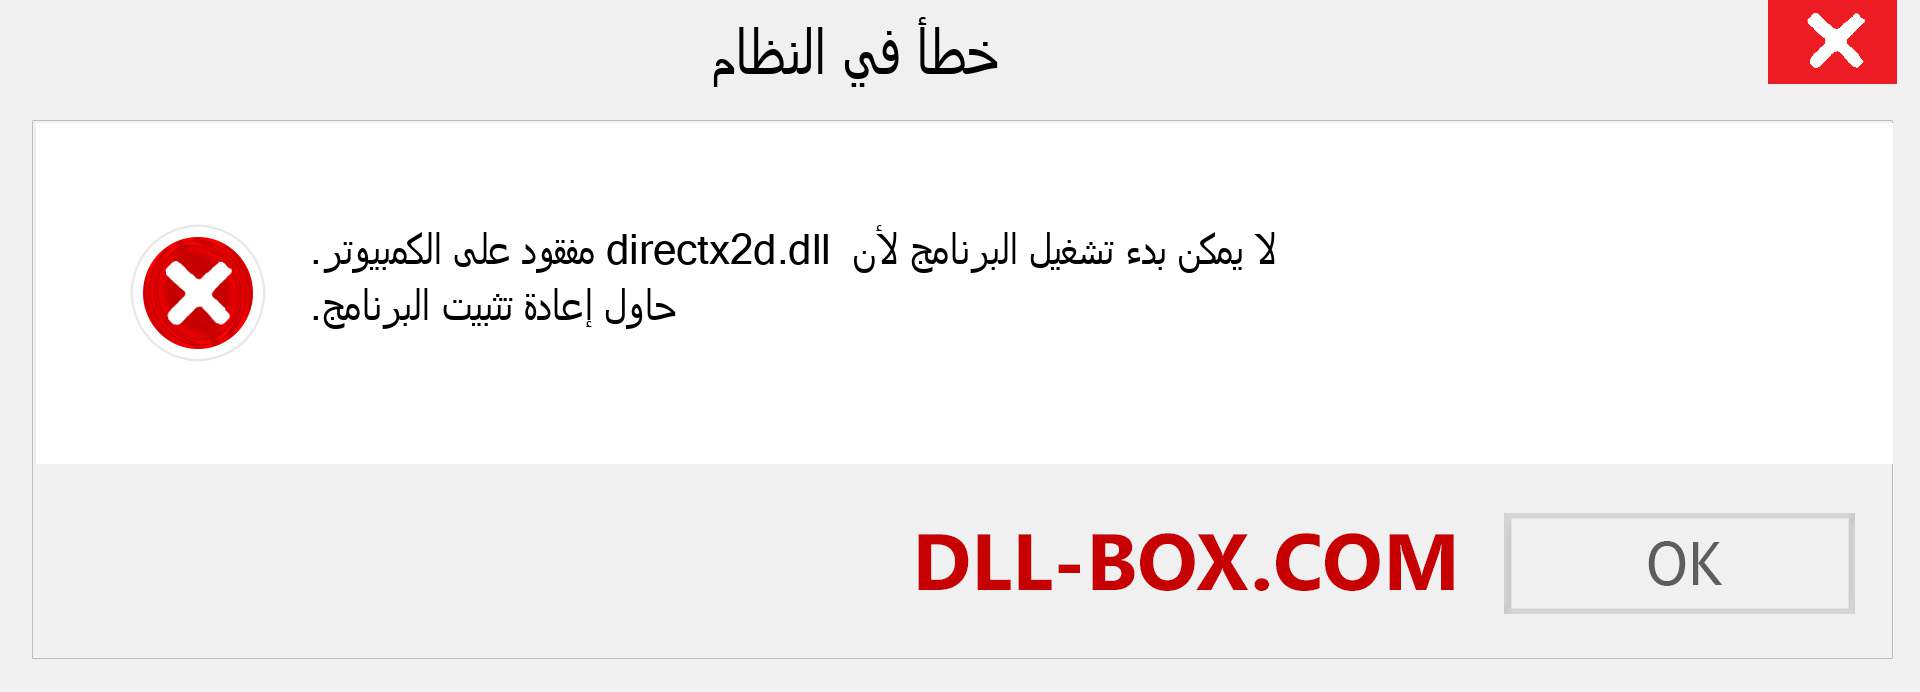 ملف directx2d.dll مفقود ؟. التنزيل لنظام التشغيل Windows 7 و 8 و 10 - إصلاح خطأ directx2d dll المفقود على Windows والصور والصور